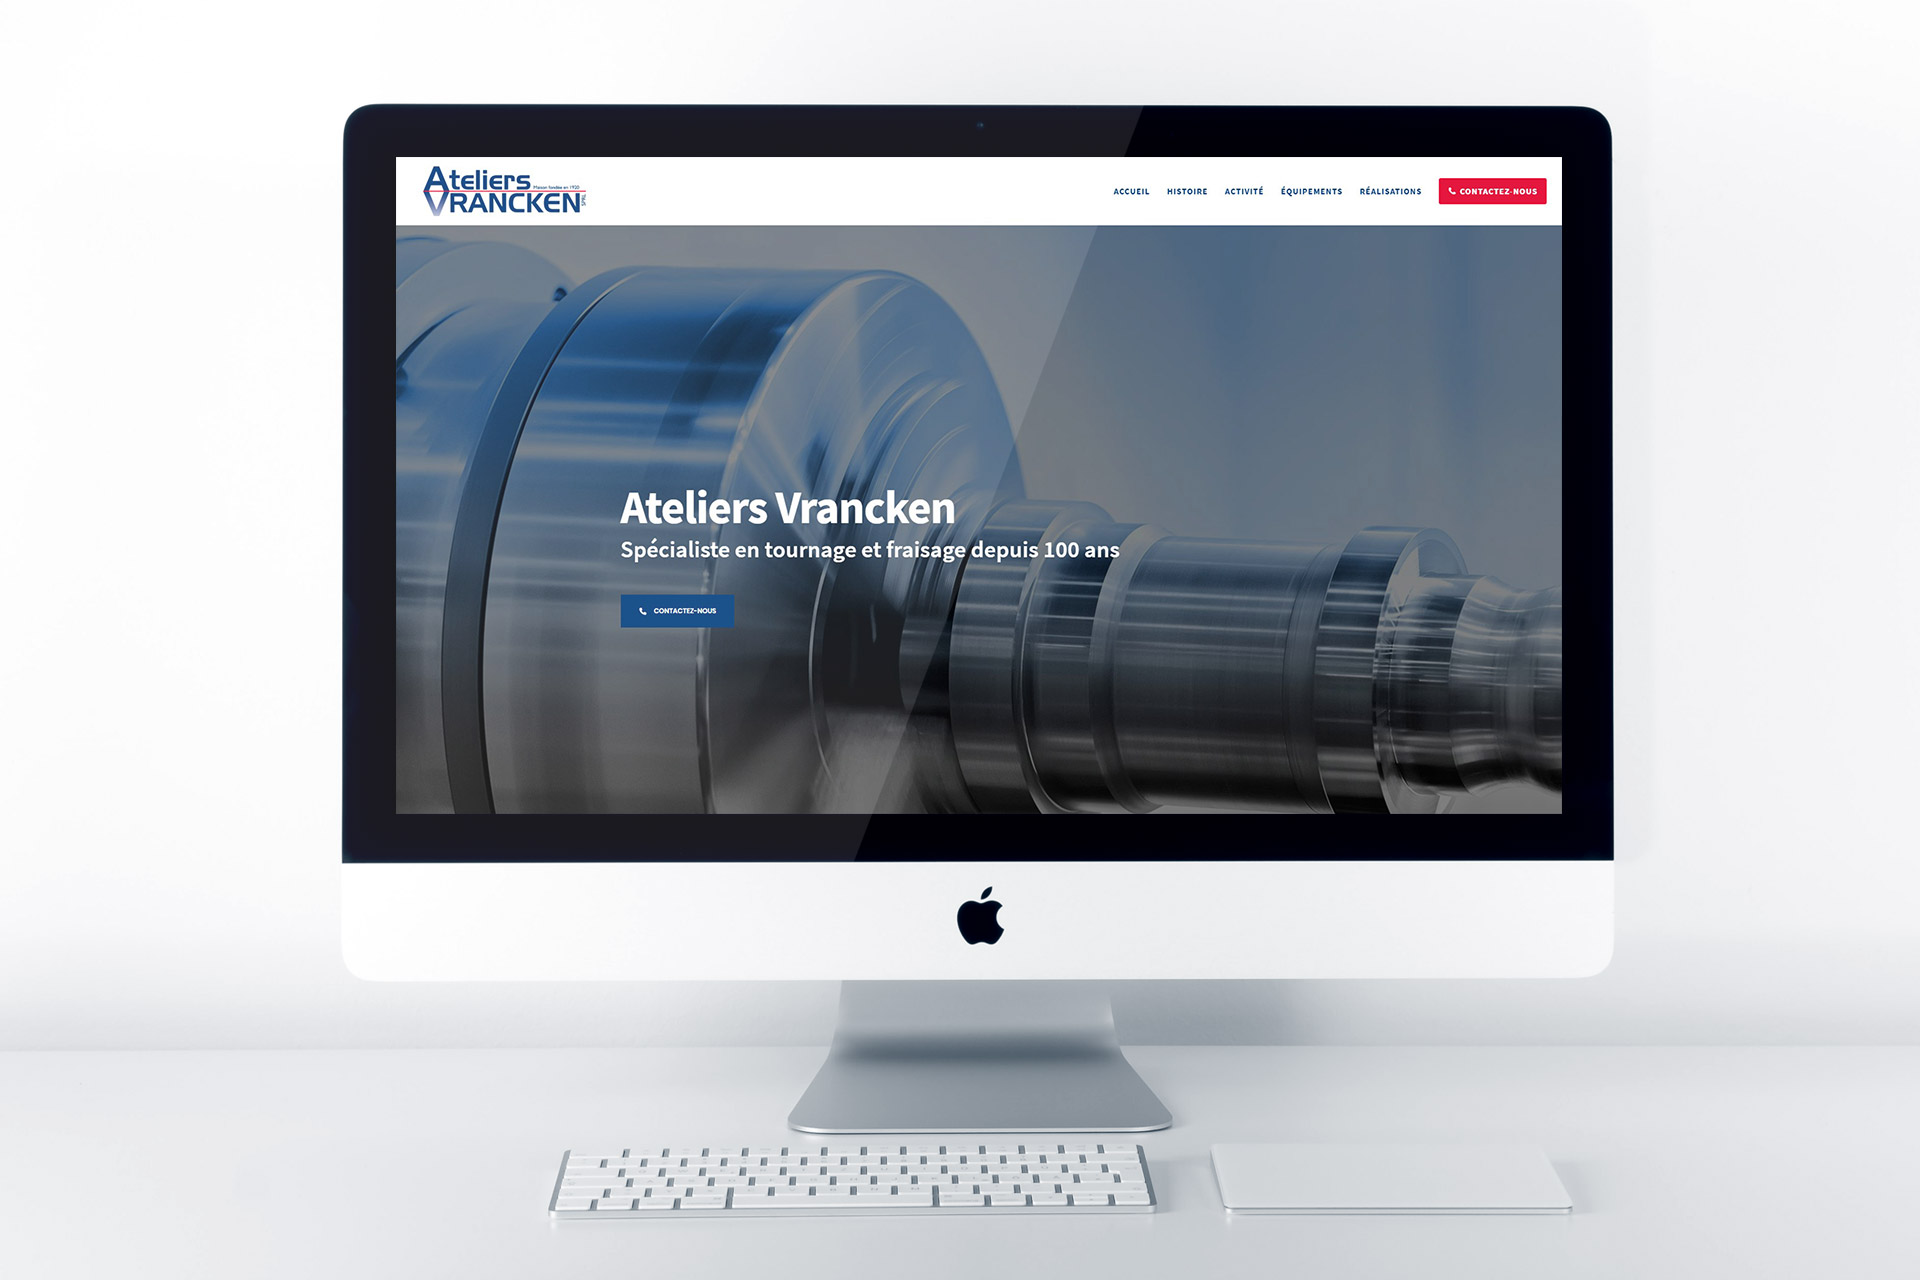 Ateliers Vrancken website